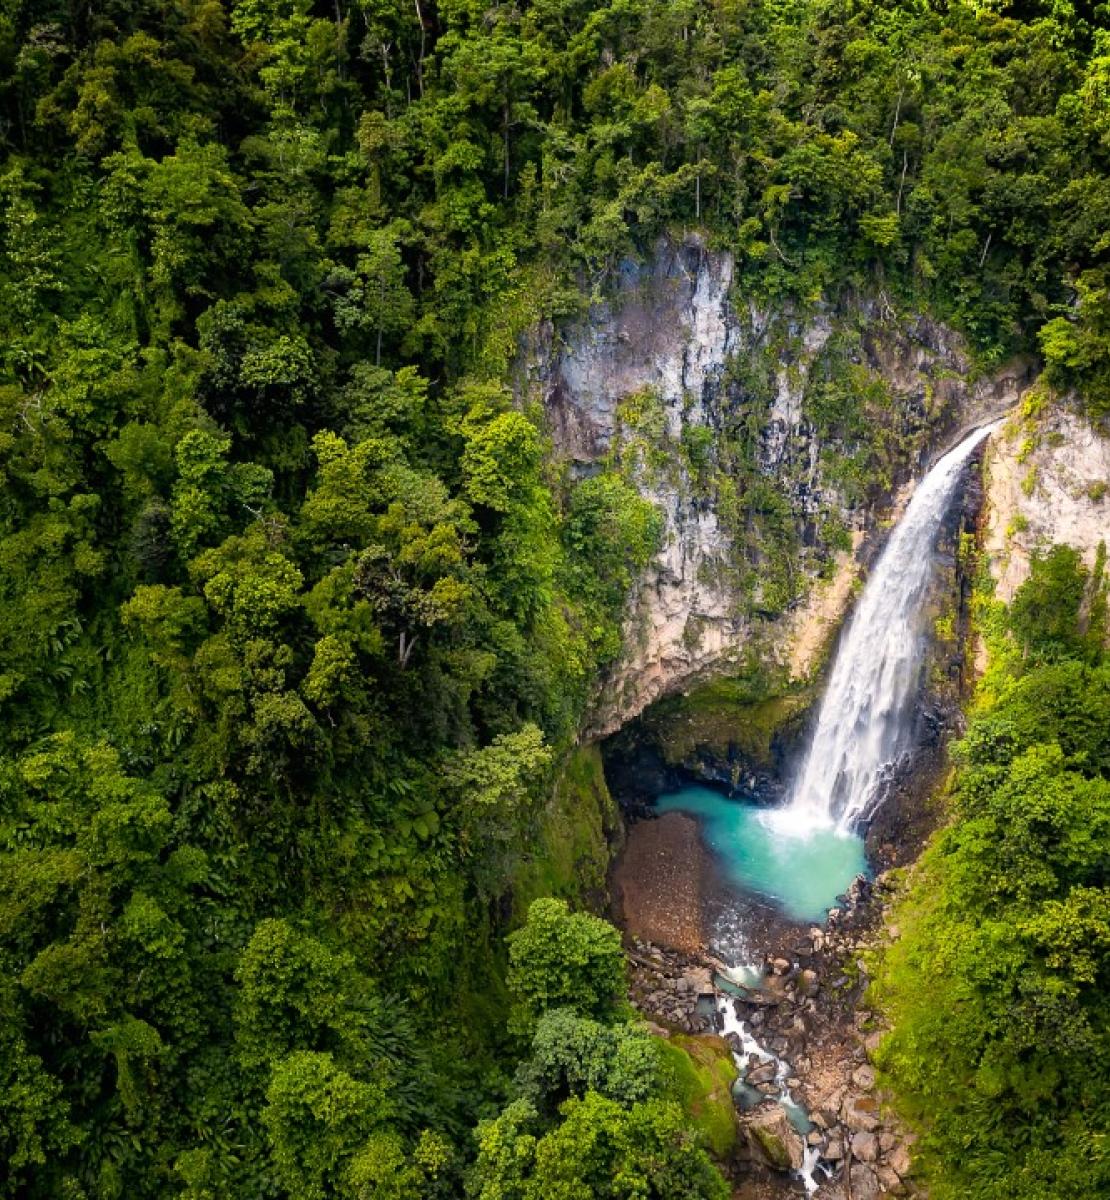 Vue d'une des plus grandes chutes d'eau de la Dominique.